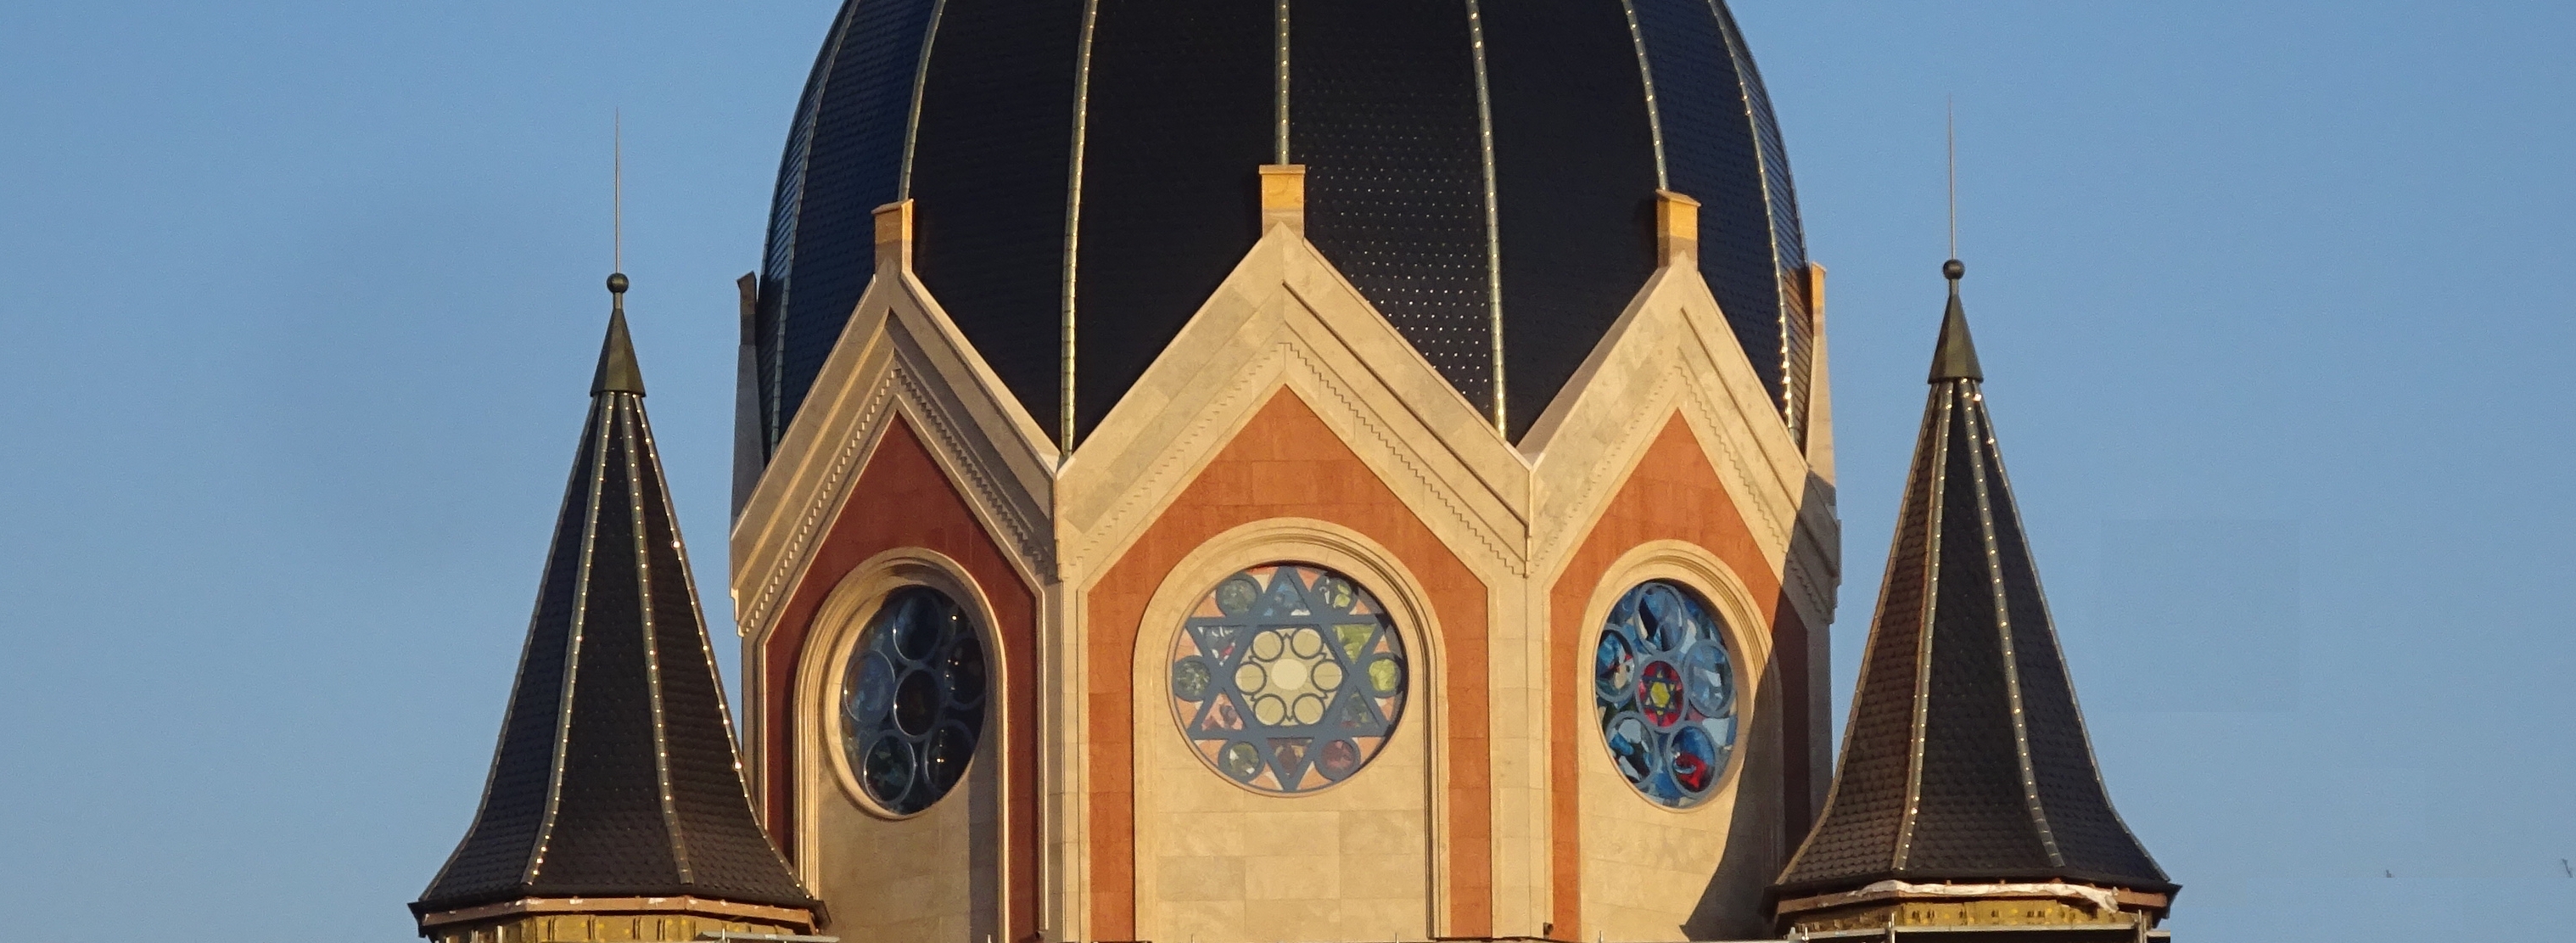 Dome part of Synagogue Kaliningrad